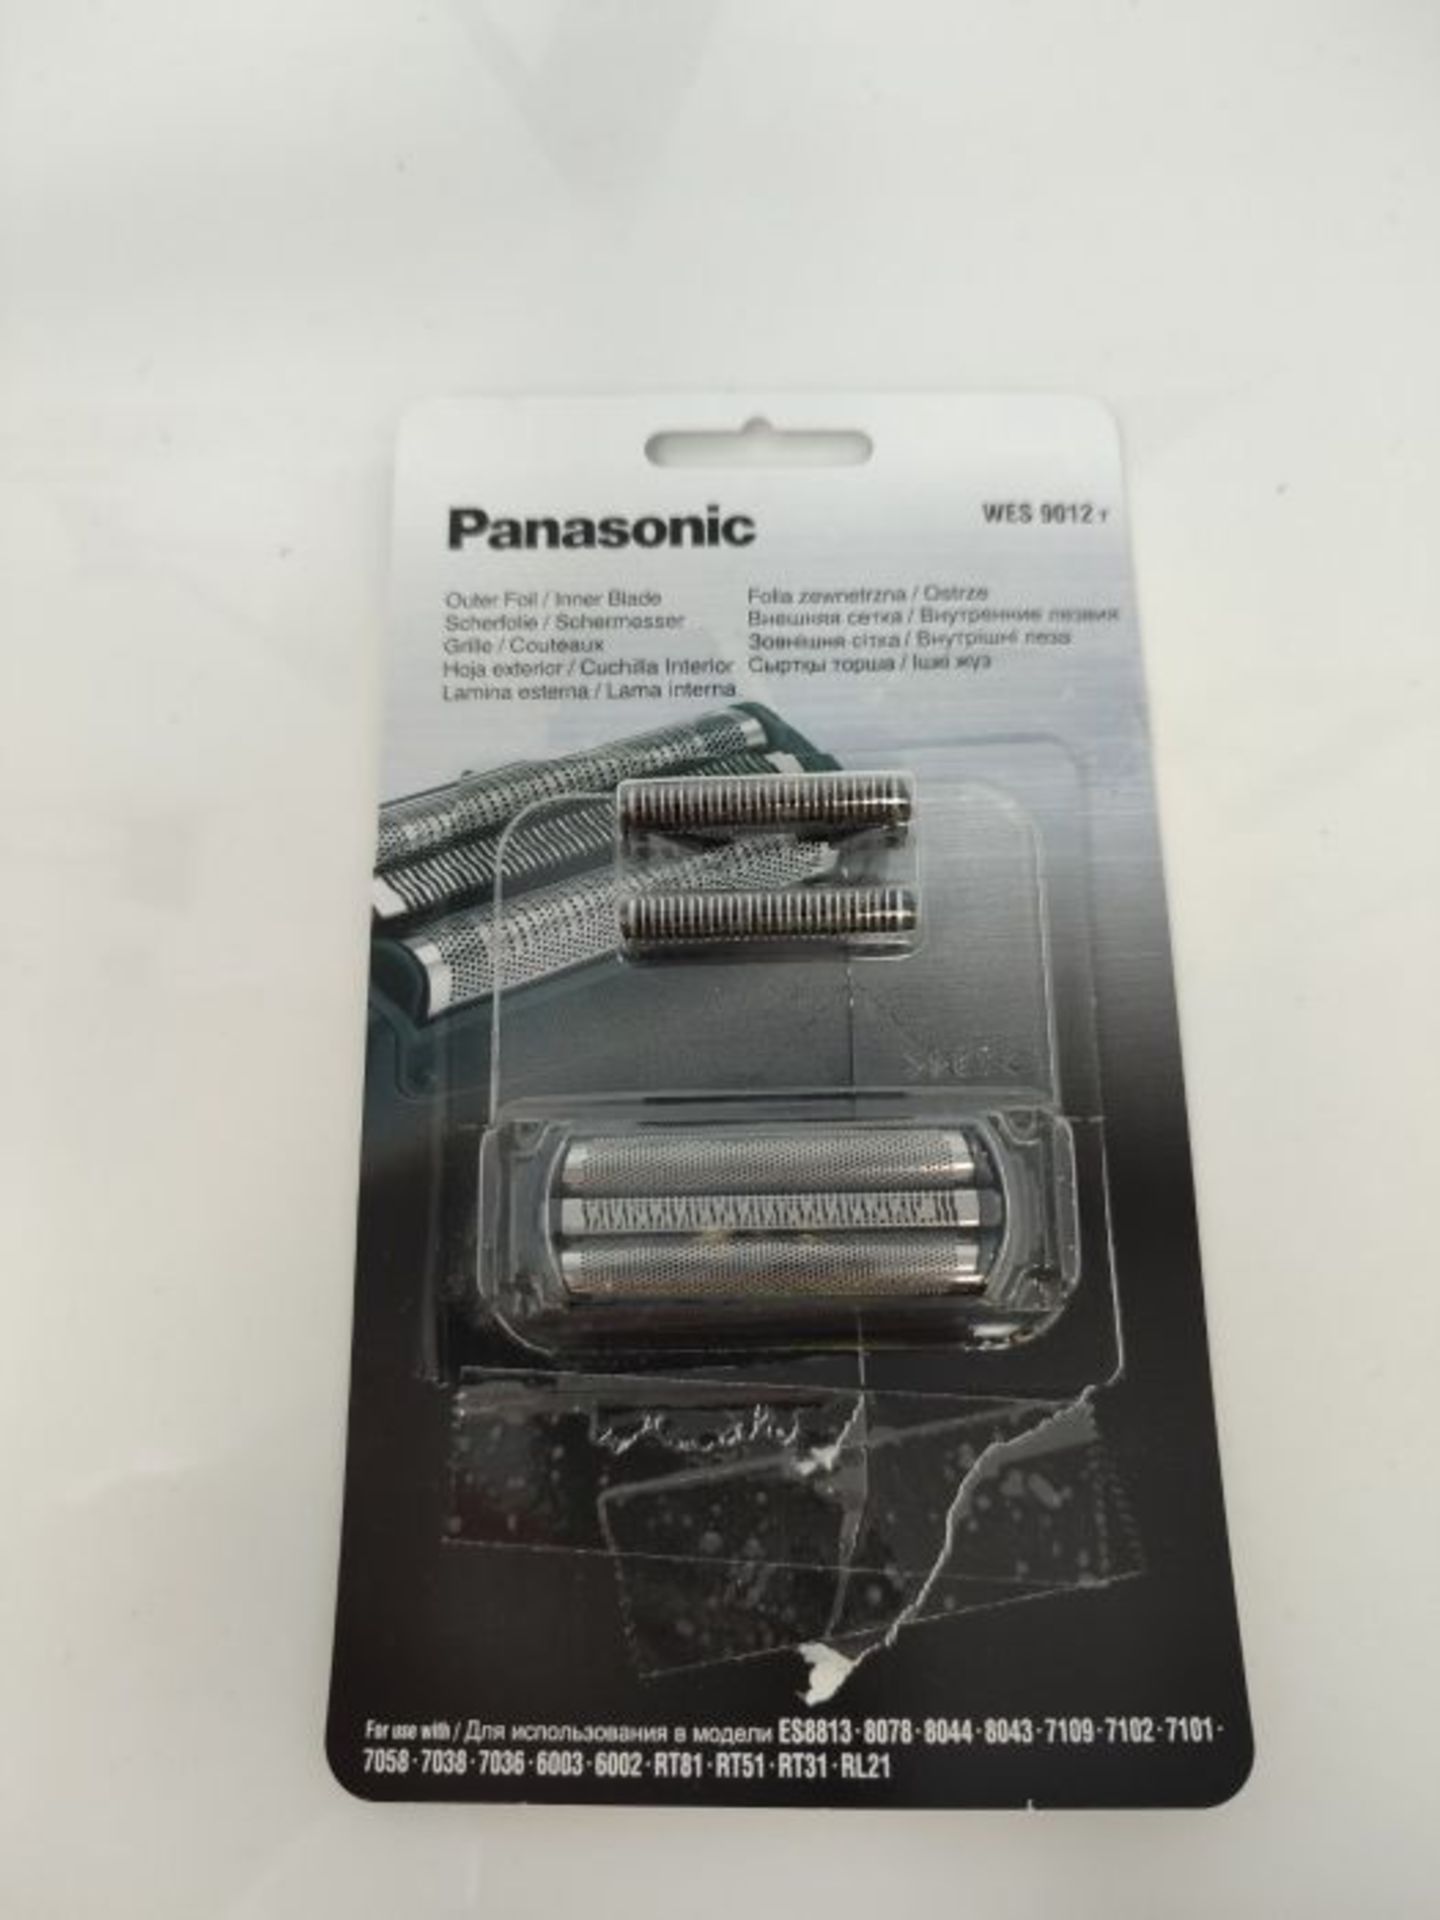 Panasonic WES9012 Schermesser und Scherfolie Combo Pack fÃ¼r ES6002, ES6003, ES7036, - Image 2 of 3